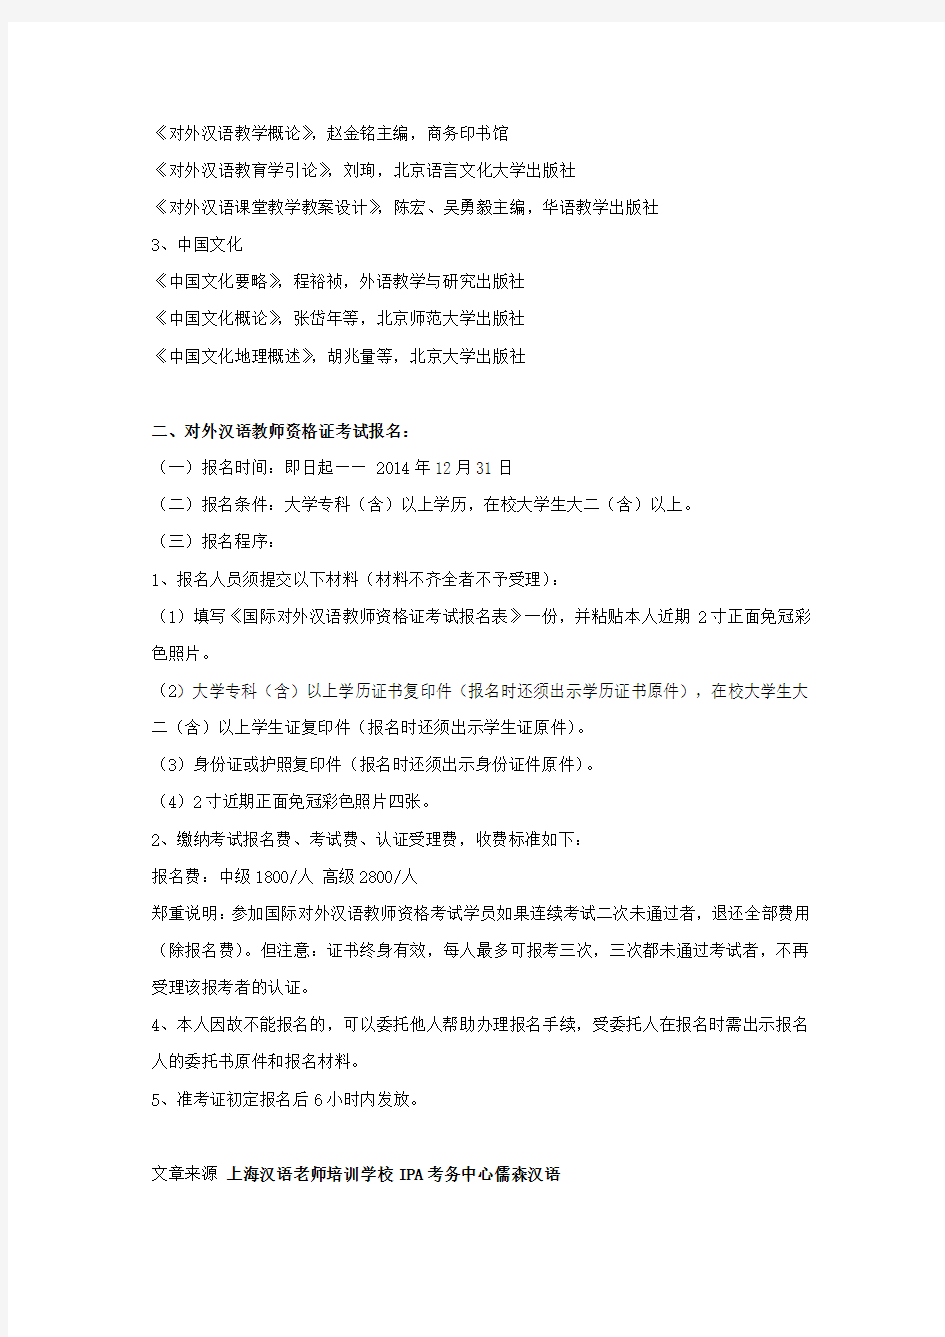 上海汉语老师培训学校2014年对外汉语教师资格证考试报名通知